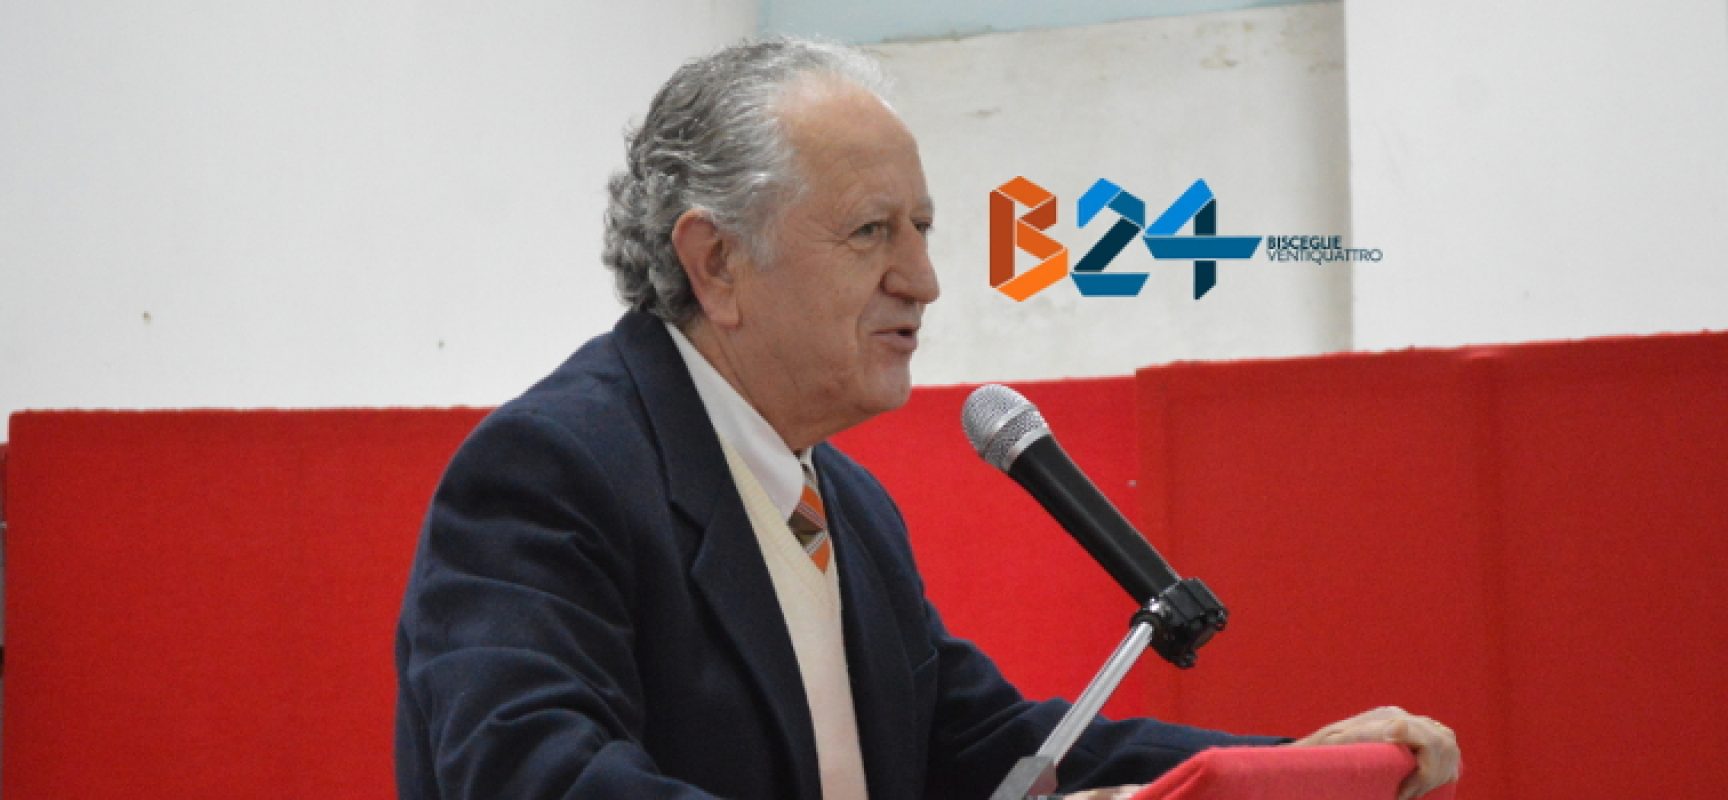 Progetto Uomo ai candidati sindaco: “Tutela giovani coppie, famiglie in crisi e disabili”